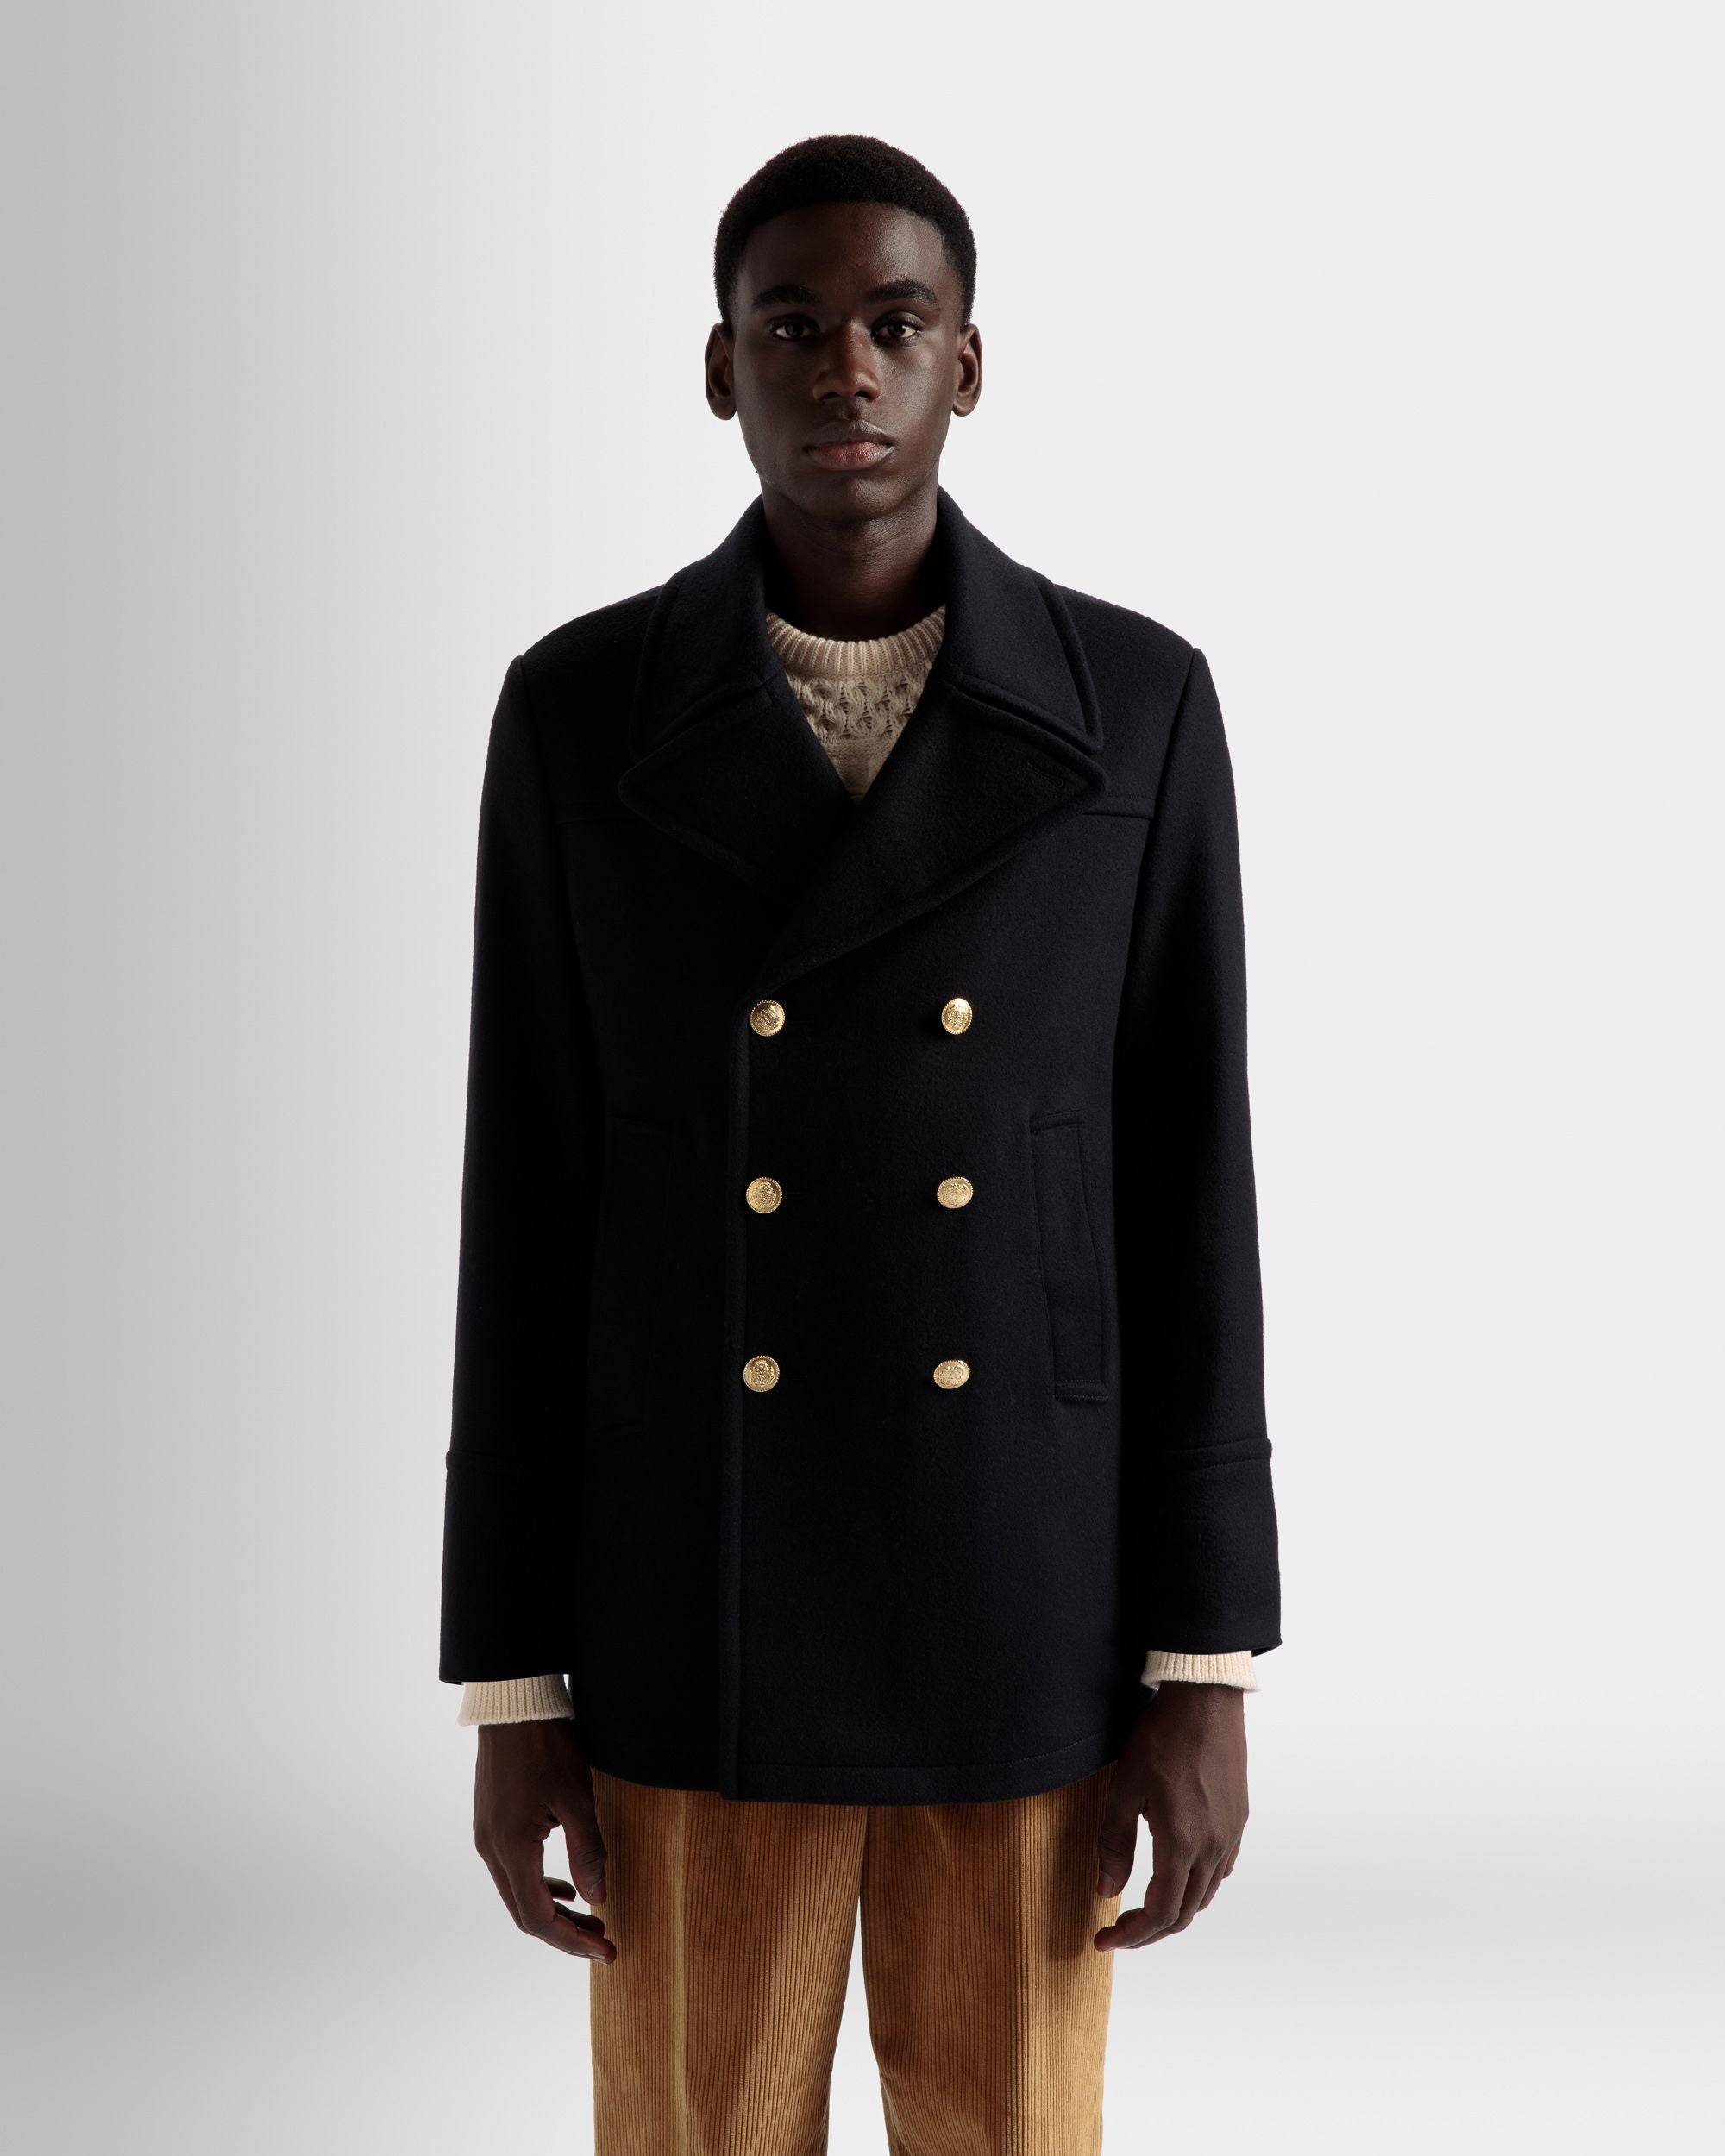 Zweireihiger Mantel | Jacken und Mäntel für Herren | Marineblaues Wollgemisch | Bally | Model getragen Nahaufnahme